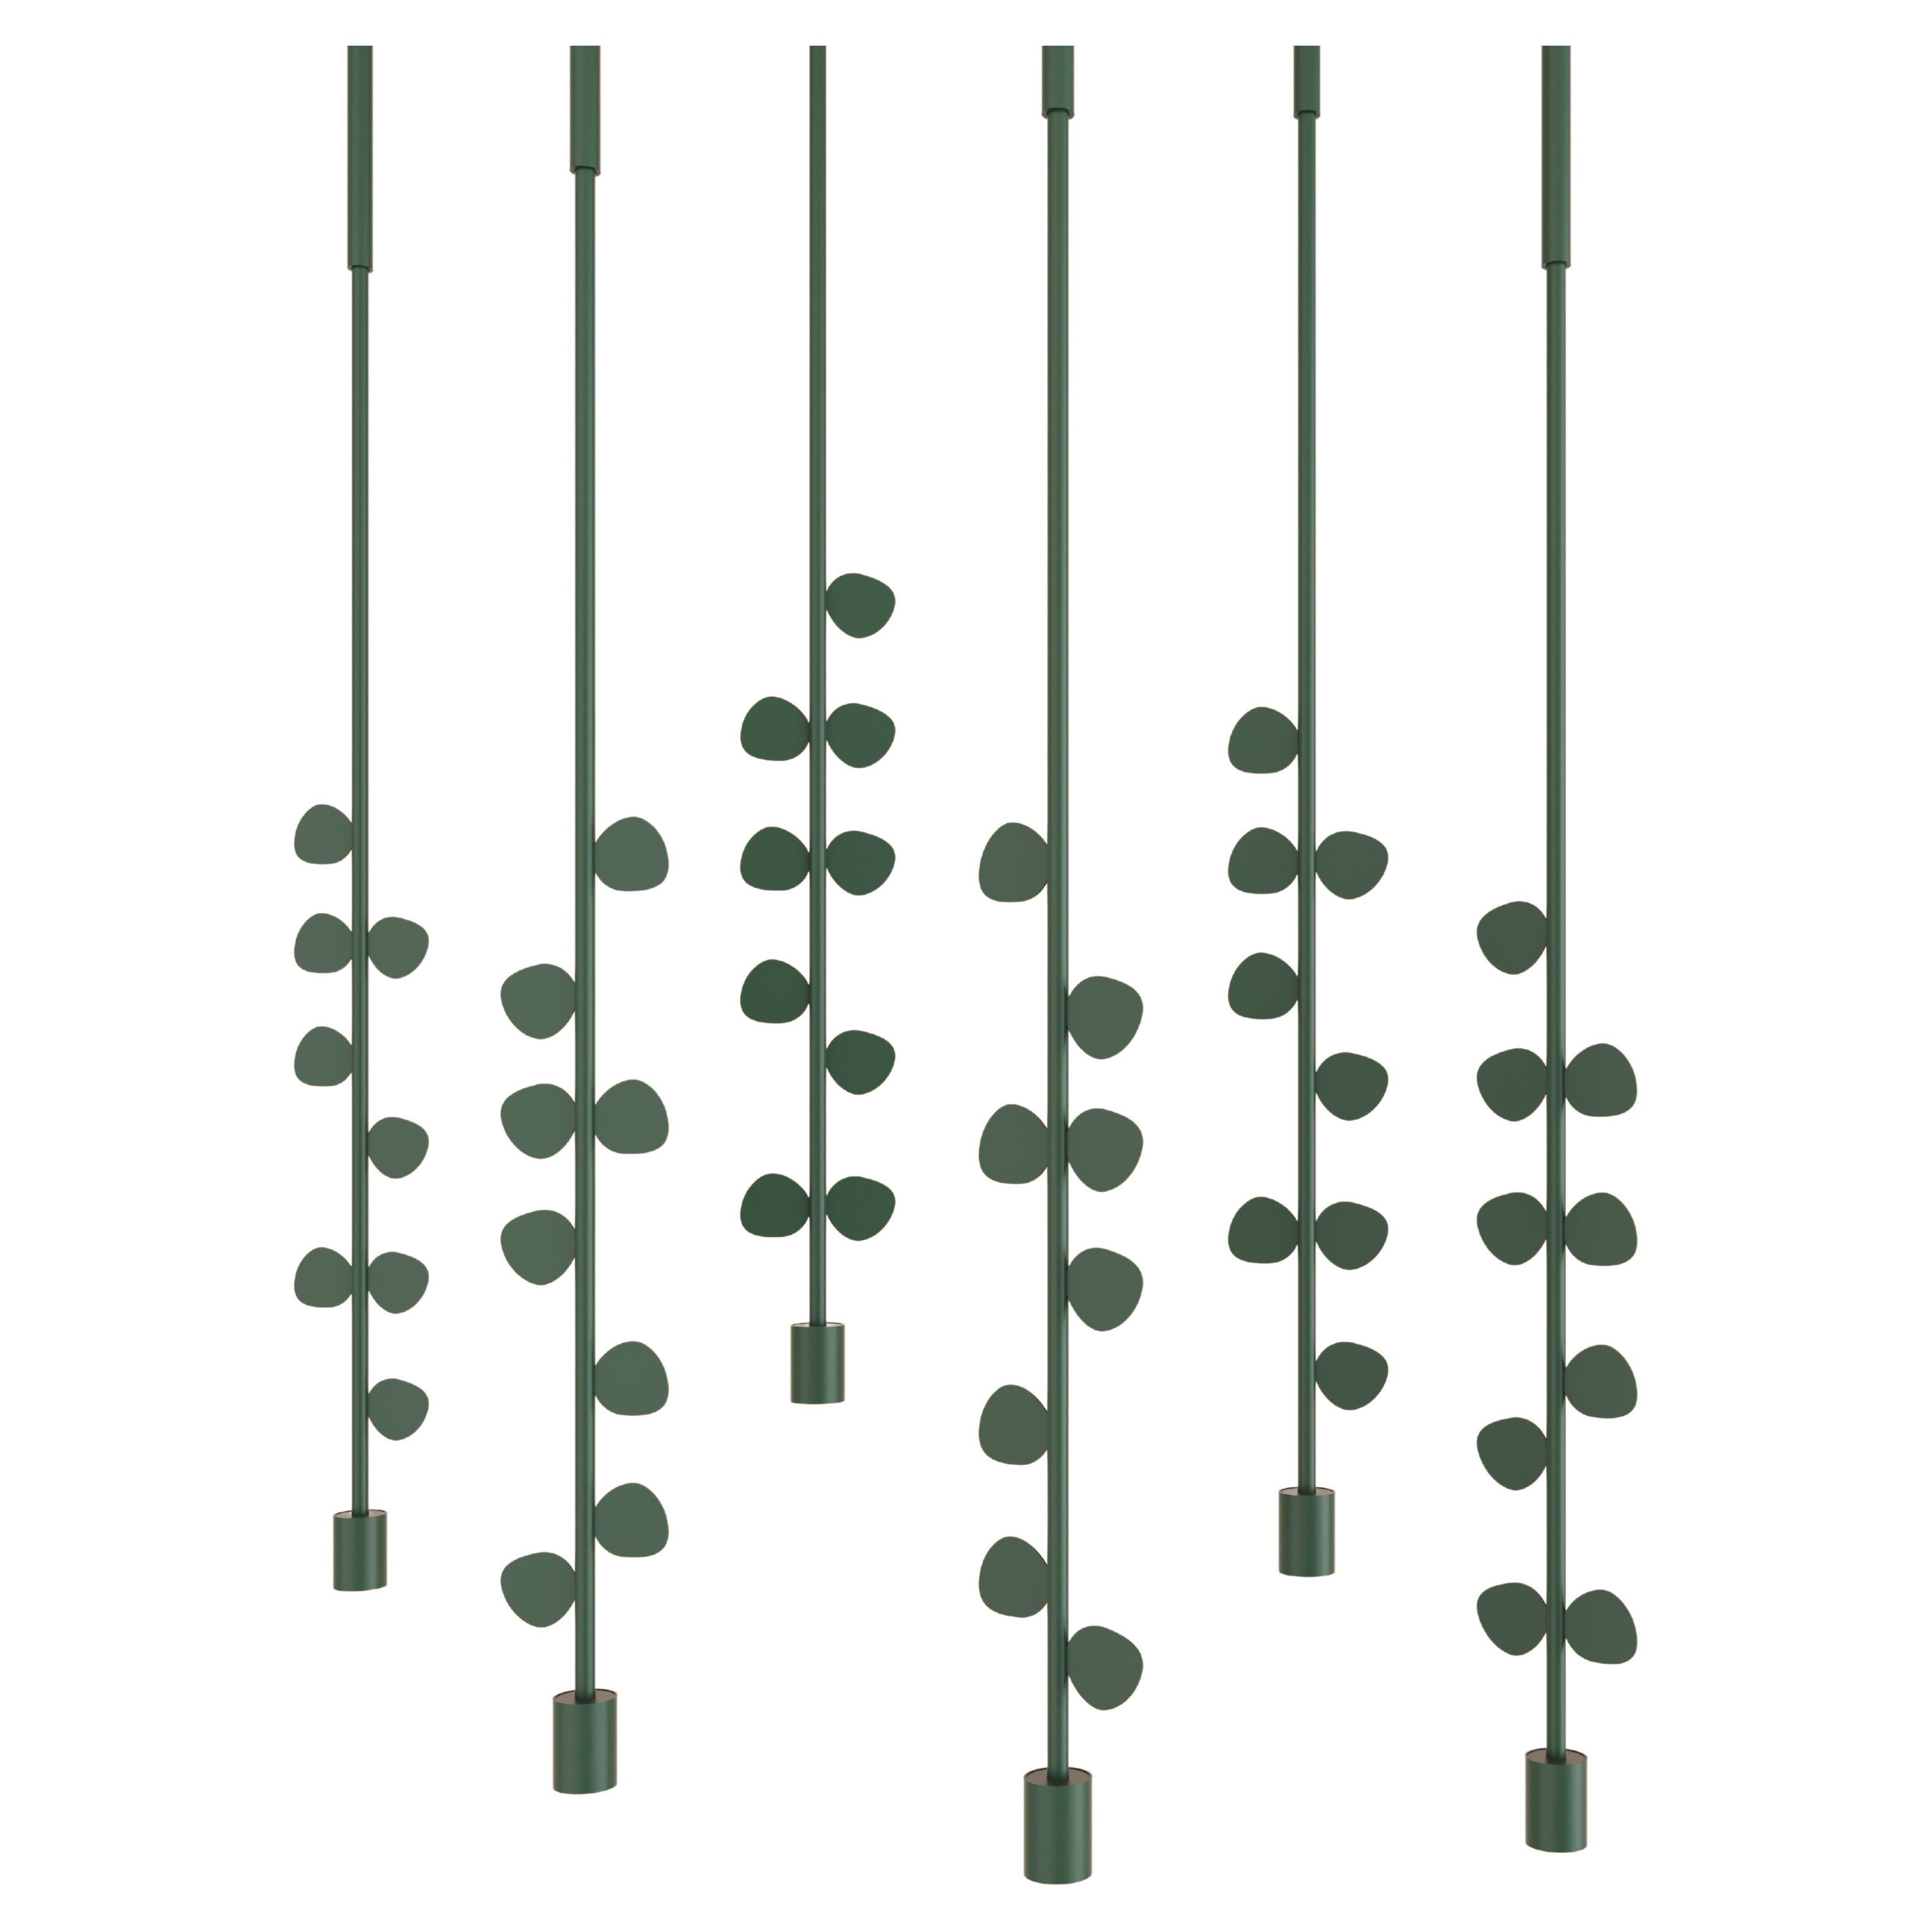 Single Pendant Lamp “Eucalipt”, Modern Stainless Steel Lighting